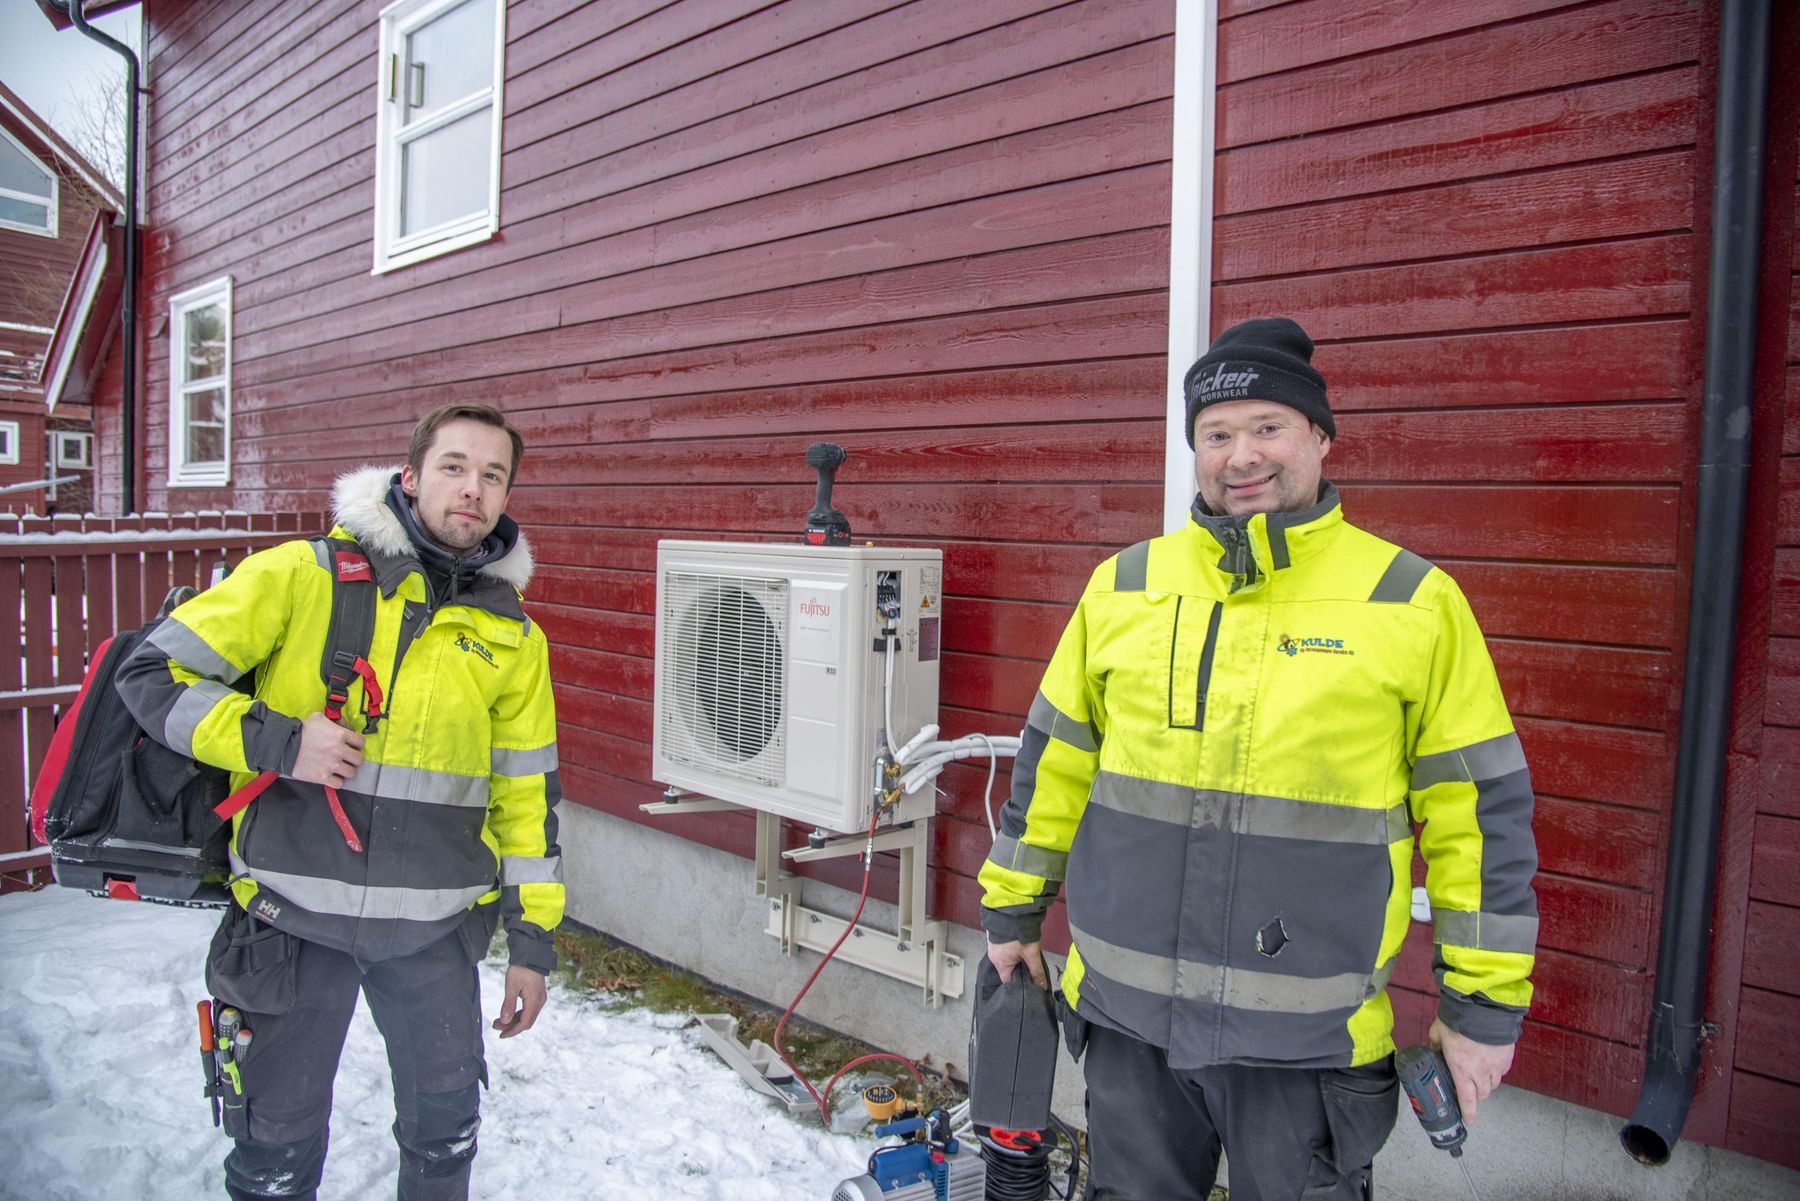 Duoen Nils Thomas Aronsen og Raymond Ratama i Kulde og Varmepumpe Service AS etter nok et endt oppdrag for Ishavskraft. ​​​​‌﻿‍﻿​‍​‍‌‍﻿﻿‌﻿​‍‌‍‍‌‌‍‌﻿‌‍‍‌‌‍﻿‍​‍​‍​﻿‍‍​‍​‍‌﻿​﻿‌‍​‌‌‍﻿‍‌‍‍‌‌﻿‌​‌﻿‍‌​‍﻿‍‌‍‍‌‌‍﻿﻿​‍​‍​‍﻿​​‍​‍‌‍‍​‌﻿​‍‌‍‌‌‌‍‌‍​‍​‍​﻿‍‍​‍​‍‌‍‍​‌﻿‌​‌﻿‌​‌﻿​​‌﻿​﻿​﻿‍‍​‍﻿﻿​‍﻿﻿‌‍‍‌‌﻿​﻿‌‍‍​‌‍​‌‌﻿‌‍‌﻿​﻿‌‍‍﻿‌﻿​‍‌‍​‌‌‍‌‍‌﻿‌​​‍﻿‍‌﻿​﻿‌‍​‌‌‍﻿‍‌‍‍‌‌﻿‌​‌﻿‍‌​‍﻿‍‌﻿​﻿‌﻿‌​‌﻿‌‌‌‍‌​‌‍‍‌‌‍﻿﻿​‍﻿﻿‌‍‍‌‌‍﻿‍‌﻿‌​‌‍‌‌‌‍﻿‍‌﻿‌​​‍﻿﻿‌‍‌‌‌‍‌​‌‍‍‌‌﻿‌​​‍﻿﻿‌‍﻿‌‌‍﻿﻿‌‍‌​‌‍‌‌​﻿﻿‌‌﻿​​‌﻿​‍‌‍‌‌‌﻿​﻿‌‍‌‌‌‍﻿‍‌﻿‌​‌‍​‌‌﻿‌​‌‍‍‌‌‍﻿﻿‌‍﻿‍​﻿‍﻿‌‍‍‌‌‍‌​​﻿﻿‌‌‍​‌‌‍‌​​﻿‍​‌‍‌​​﻿‌‍​﻿‌‍​﻿​﻿‌‍​‌​‍﻿‌‌‍‌​​﻿‌﻿​﻿‌‌​﻿​​​‍﻿‌​﻿‌​‌‍​﻿​﻿‌‍​﻿‌﻿​‍﻿‌‌‍​‍​﻿‌‌‌‍‌‍​﻿‌​​‍﻿‌‌‍‌​​﻿‍‌‌‍‌​​﻿‌﻿​﻿‌‌​﻿​﻿​﻿‌﻿​﻿‌﻿‌‍​﻿​﻿​﻿‌‍​‍‌‍‌‌​﻿‍﻿‌﻿‌​‌﻿‍‌‌﻿​​‌‍‌‌​﻿﻿‌‌‍​‌‌﻿​‍‌﻿‌​‌‍‍‌‌‍​﻿‌‍﻿​‌‍‌‌​﻿‍﻿‌﻿​​‌‍​‌‌﻿‌​‌‍‍​​﻿﻿‌‌‍​﻿‌‍﻿﻿‌‍﻿‍‌﻿‌​‌‍‌‌‌‍﻿‍‌﻿‌​​‍‌‌​﻿‌‌‌​​‍‌‌﻿﻿‌‍‍﻿‌‍‌‌‌﻿‍‌​‍‌‌​﻿​﻿‌​‌​​‍‌‌​﻿​﻿‌​‌​​‍‌‌​﻿​‍​﻿​‍‌‍‌‍‌‍‌​​﻿‌‍​﻿‍‌​﻿​‍​﻿​​​﻿‍‌​﻿​‌‌‍‌‍​﻿‌﻿​﻿​‌‌‍‌‍​‍‌‌​﻿​‍​﻿​‍​‍‌‌​﻿‌‌‌​‌​​‍﻿‍‌‍​‌‌‍﻿​‌﻿‌​​﻿﻿﻿‌‍​‍‌‍​‌‌﻿​﻿‌‍‌‌‌‌‌‌‌﻿​‍‌‍﻿​​﻿﻿‌‌‍‍​‌﻿‌​‌﻿‌​‌﻿​​‌﻿​﻿​‍‌‌​﻿​﻿‌​​‌​‍‌‌​﻿​‍‌​‌‍​‍‌‌​﻿​‍‌​‌‍‌‍‍‌‌﻿​﻿‌‍‍​‌‍​‌‌﻿‌‍‌﻿​﻿‌‍‍﻿‌﻿​‍‌‍​‌‌‍‌‍‌﻿‌​​‍﻿‍‌﻿​﻿‌‍​‌‌‍﻿‍‌‍‍‌‌﻿‌​‌﻿‍‌​‍﻿‍‌﻿​﻿‌﻿‌​‌﻿‌‌‌‍‌​‌‍‍‌‌‍﻿﻿​‍‌‍‌‍‍‌‌‍‌​​﻿﻿‌‌‍​‌‌‍‌​​﻿‍​‌‍‌​​﻿‌‍​﻿‌‍​﻿​﻿‌‍​‌​‍﻿‌‌‍‌​​﻿‌﻿​﻿‌‌​﻿​​​‍﻿‌​﻿‌​‌‍​﻿​﻿‌‍​﻿‌﻿​‍﻿‌‌‍​‍​﻿‌‌‌‍‌‍​﻿‌​​‍﻿‌‌‍‌​​﻿‍‌‌‍‌​​﻿‌﻿​﻿‌‌​﻿​﻿​﻿‌﻿​﻿‌﻿‌‍​﻿​﻿​﻿‌‍​‍‌‍‌‌​‍‌‍‌﻿‌​‌﻿‍‌‌﻿​​‌‍‌‌​﻿﻿‌‌‍​‌‌﻿​‍‌﻿‌​‌‍‍‌‌‍​﻿‌‍﻿​‌‍‌‌​‍‌‍‌﻿​​‌‍​‌‌﻿‌​‌‍‍​​﻿﻿‌‌‍​﻿‌‍﻿﻿‌‍﻿‍‌﻿‌​‌‍‌‌‌‍﻿‍‌﻿‌​​‍‌‌​﻿‌‌‌​​‍‌‌﻿﻿‌‍‍﻿‌‍‌‌‌﻿‍‌​‍‌‌​﻿​﻿‌​‌​​‍‌‌​﻿​﻿‌​‌​​‍‌‌​﻿​‍​﻿​‍‌‍‌‍‌‍‌​​﻿‌‍​﻿‍‌​﻿​‍​﻿​​​﻿‍‌​﻿​‌‌‍‌‍​﻿‌﻿​﻿​‌‌‍‌‍​‍‌‌​﻿​‍​﻿​‍​‍‌‌​﻿‌‌‌​‌​​‍﻿‍‌‍​‌‌‍﻿​‌﻿‌​​‍​‍‌﻿﻿‌